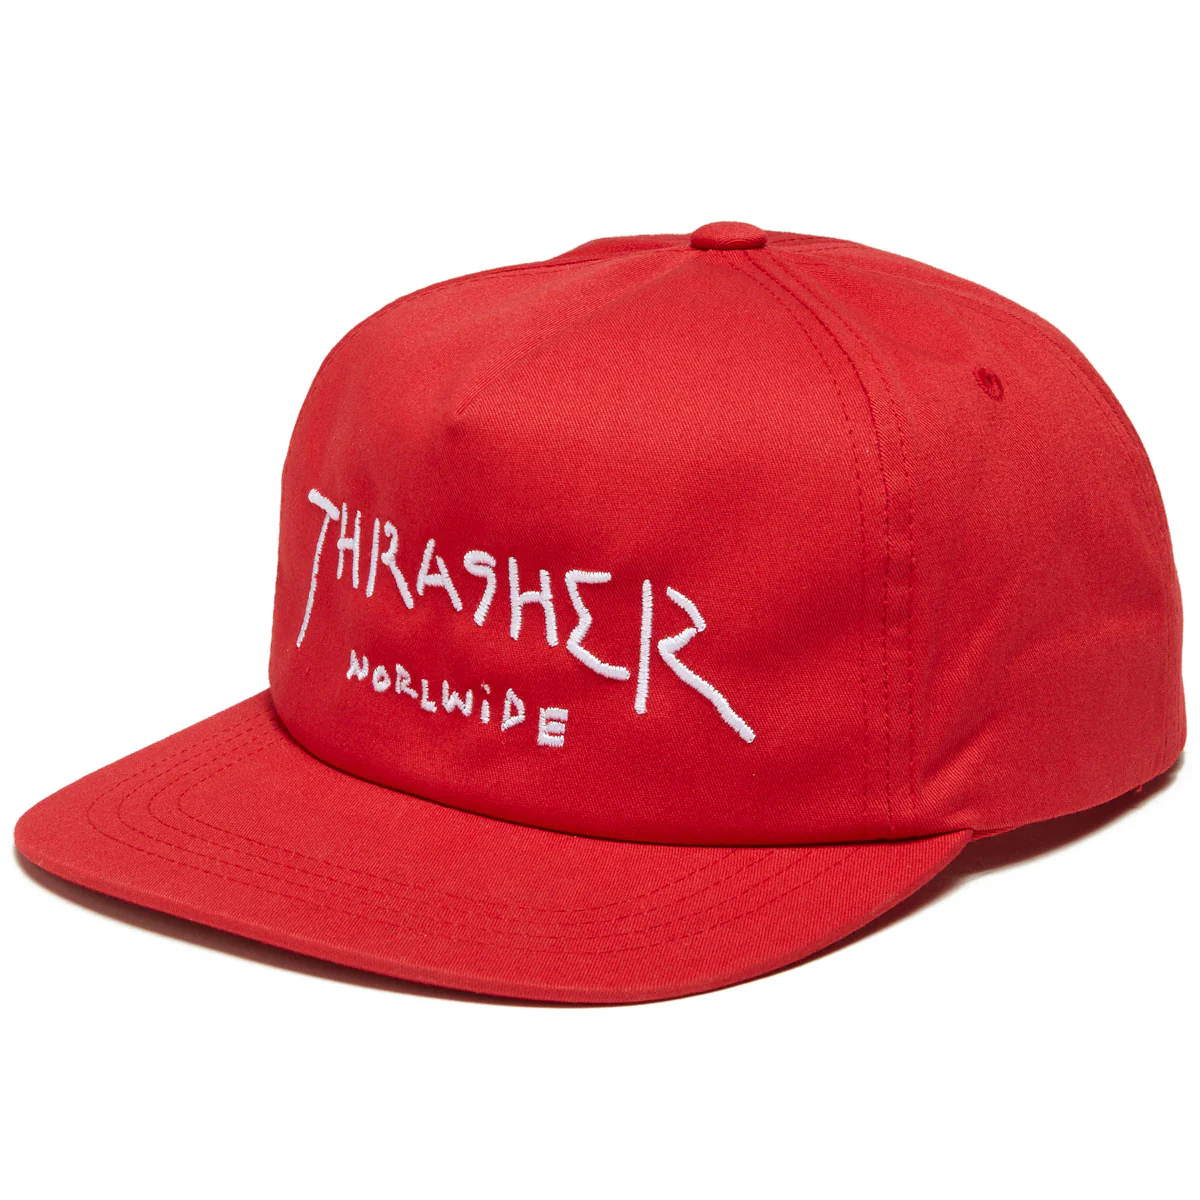 Thrasher - Gorro Snapback Thrasher Worlwide Red